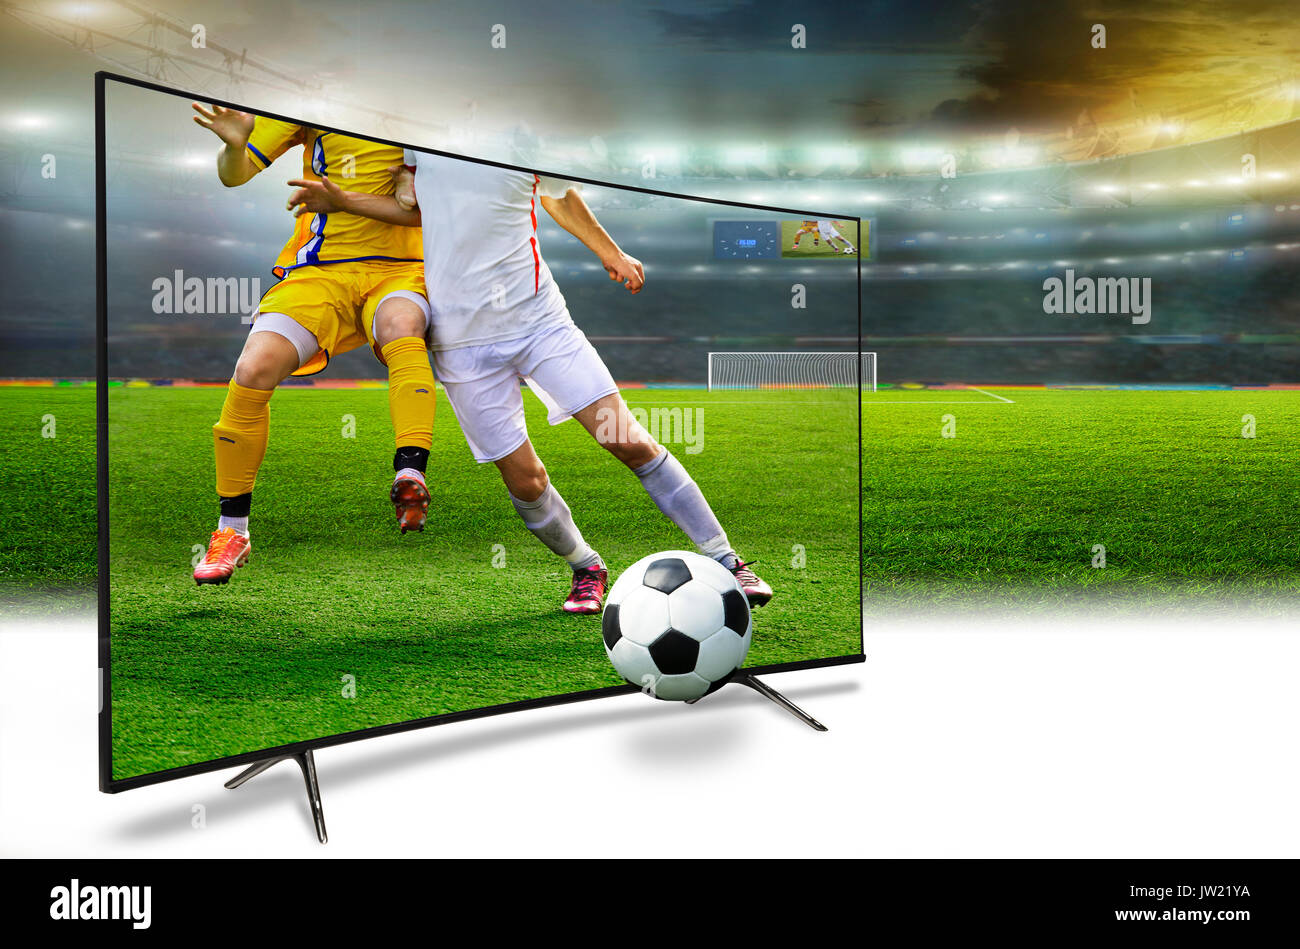 Monitor 4k viendo la televisión inteligente traducción de juego de fútbol. Concepto Foto de stock